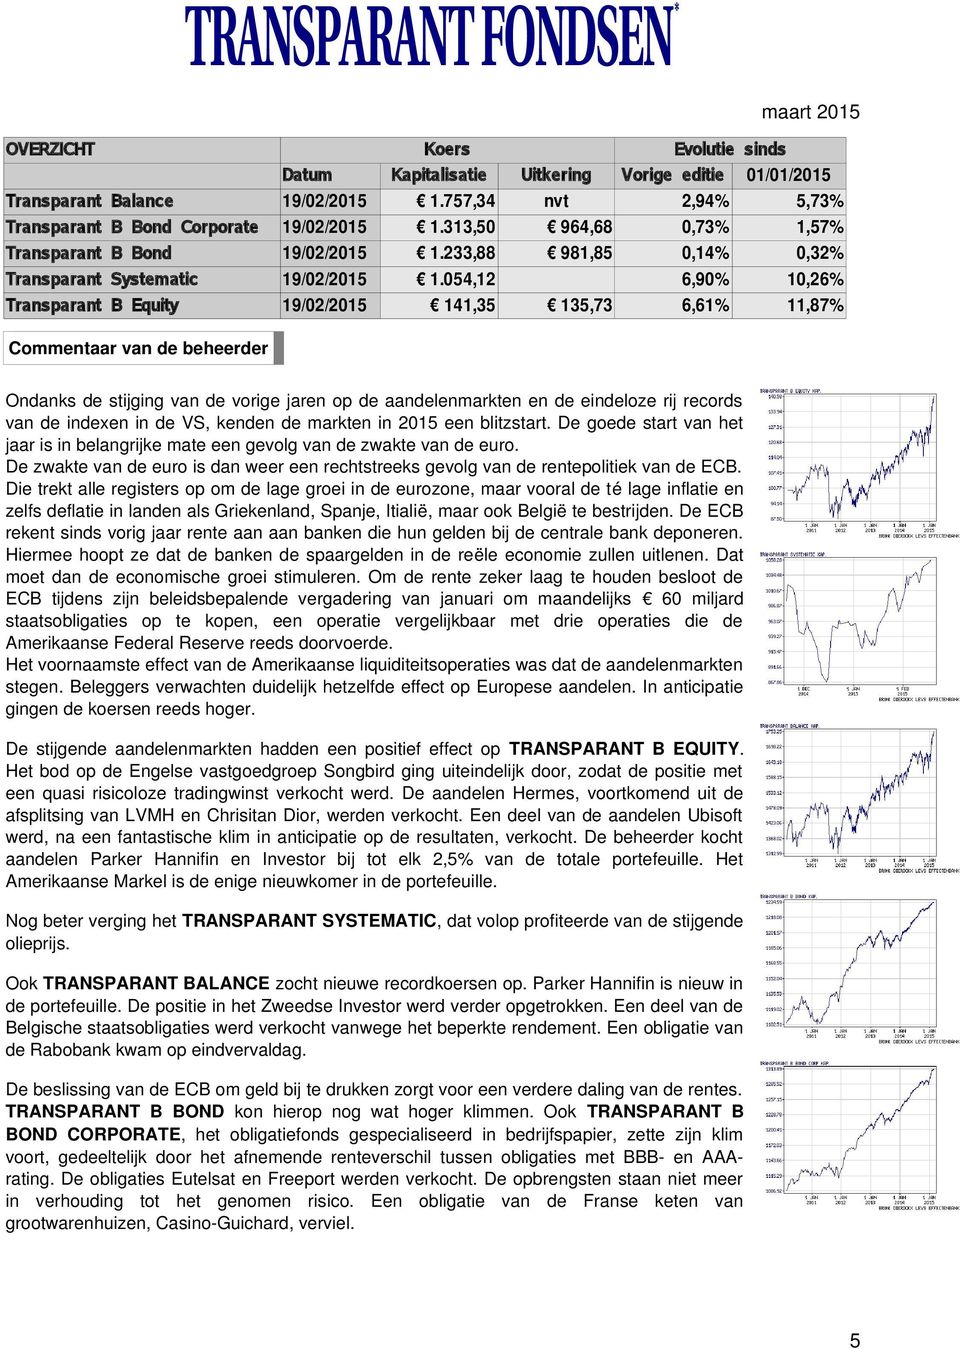 054,12 6,90% 10,26% Transparant B Equity 19/02/2015 141,35 135,73 6,61% 11,87% Commentaar van de de beheerder Ondanks de stijging van de vorige jaren op de aandelenmarkten en de eindeloze rij records